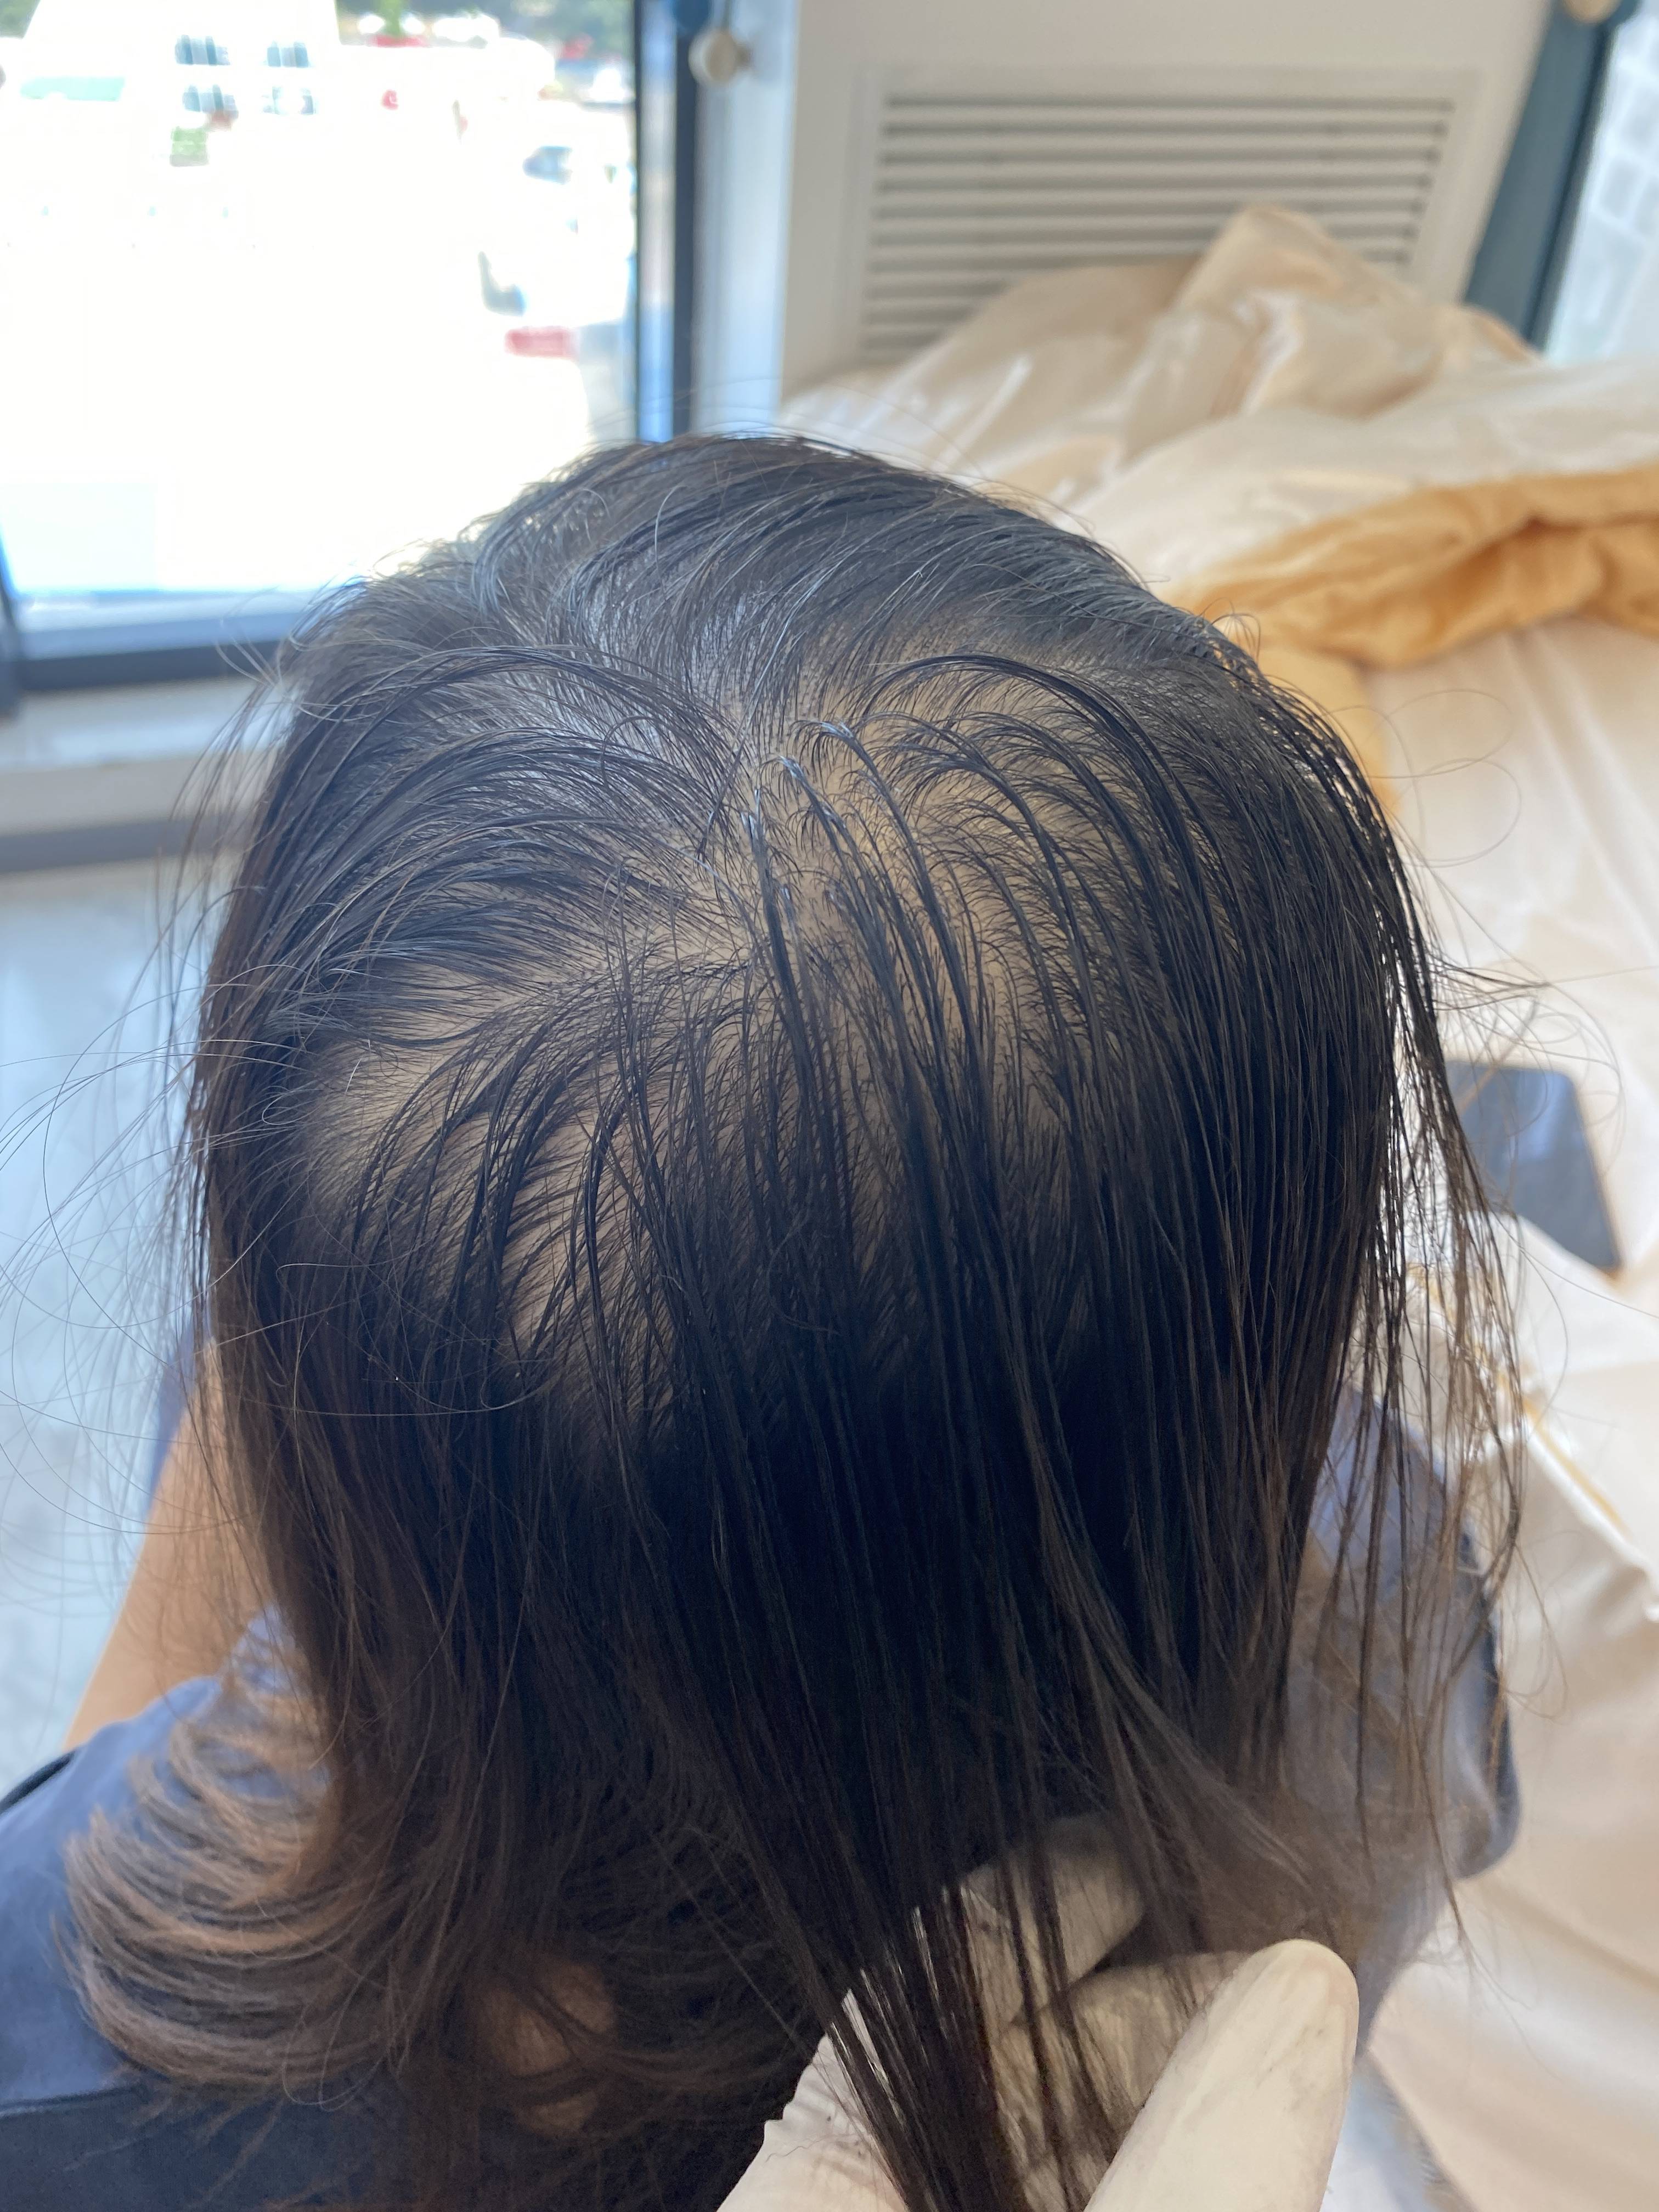 1 12 头顶头发稀疏,这种情况可以采用纹发里的加密方案来做掩饰,在